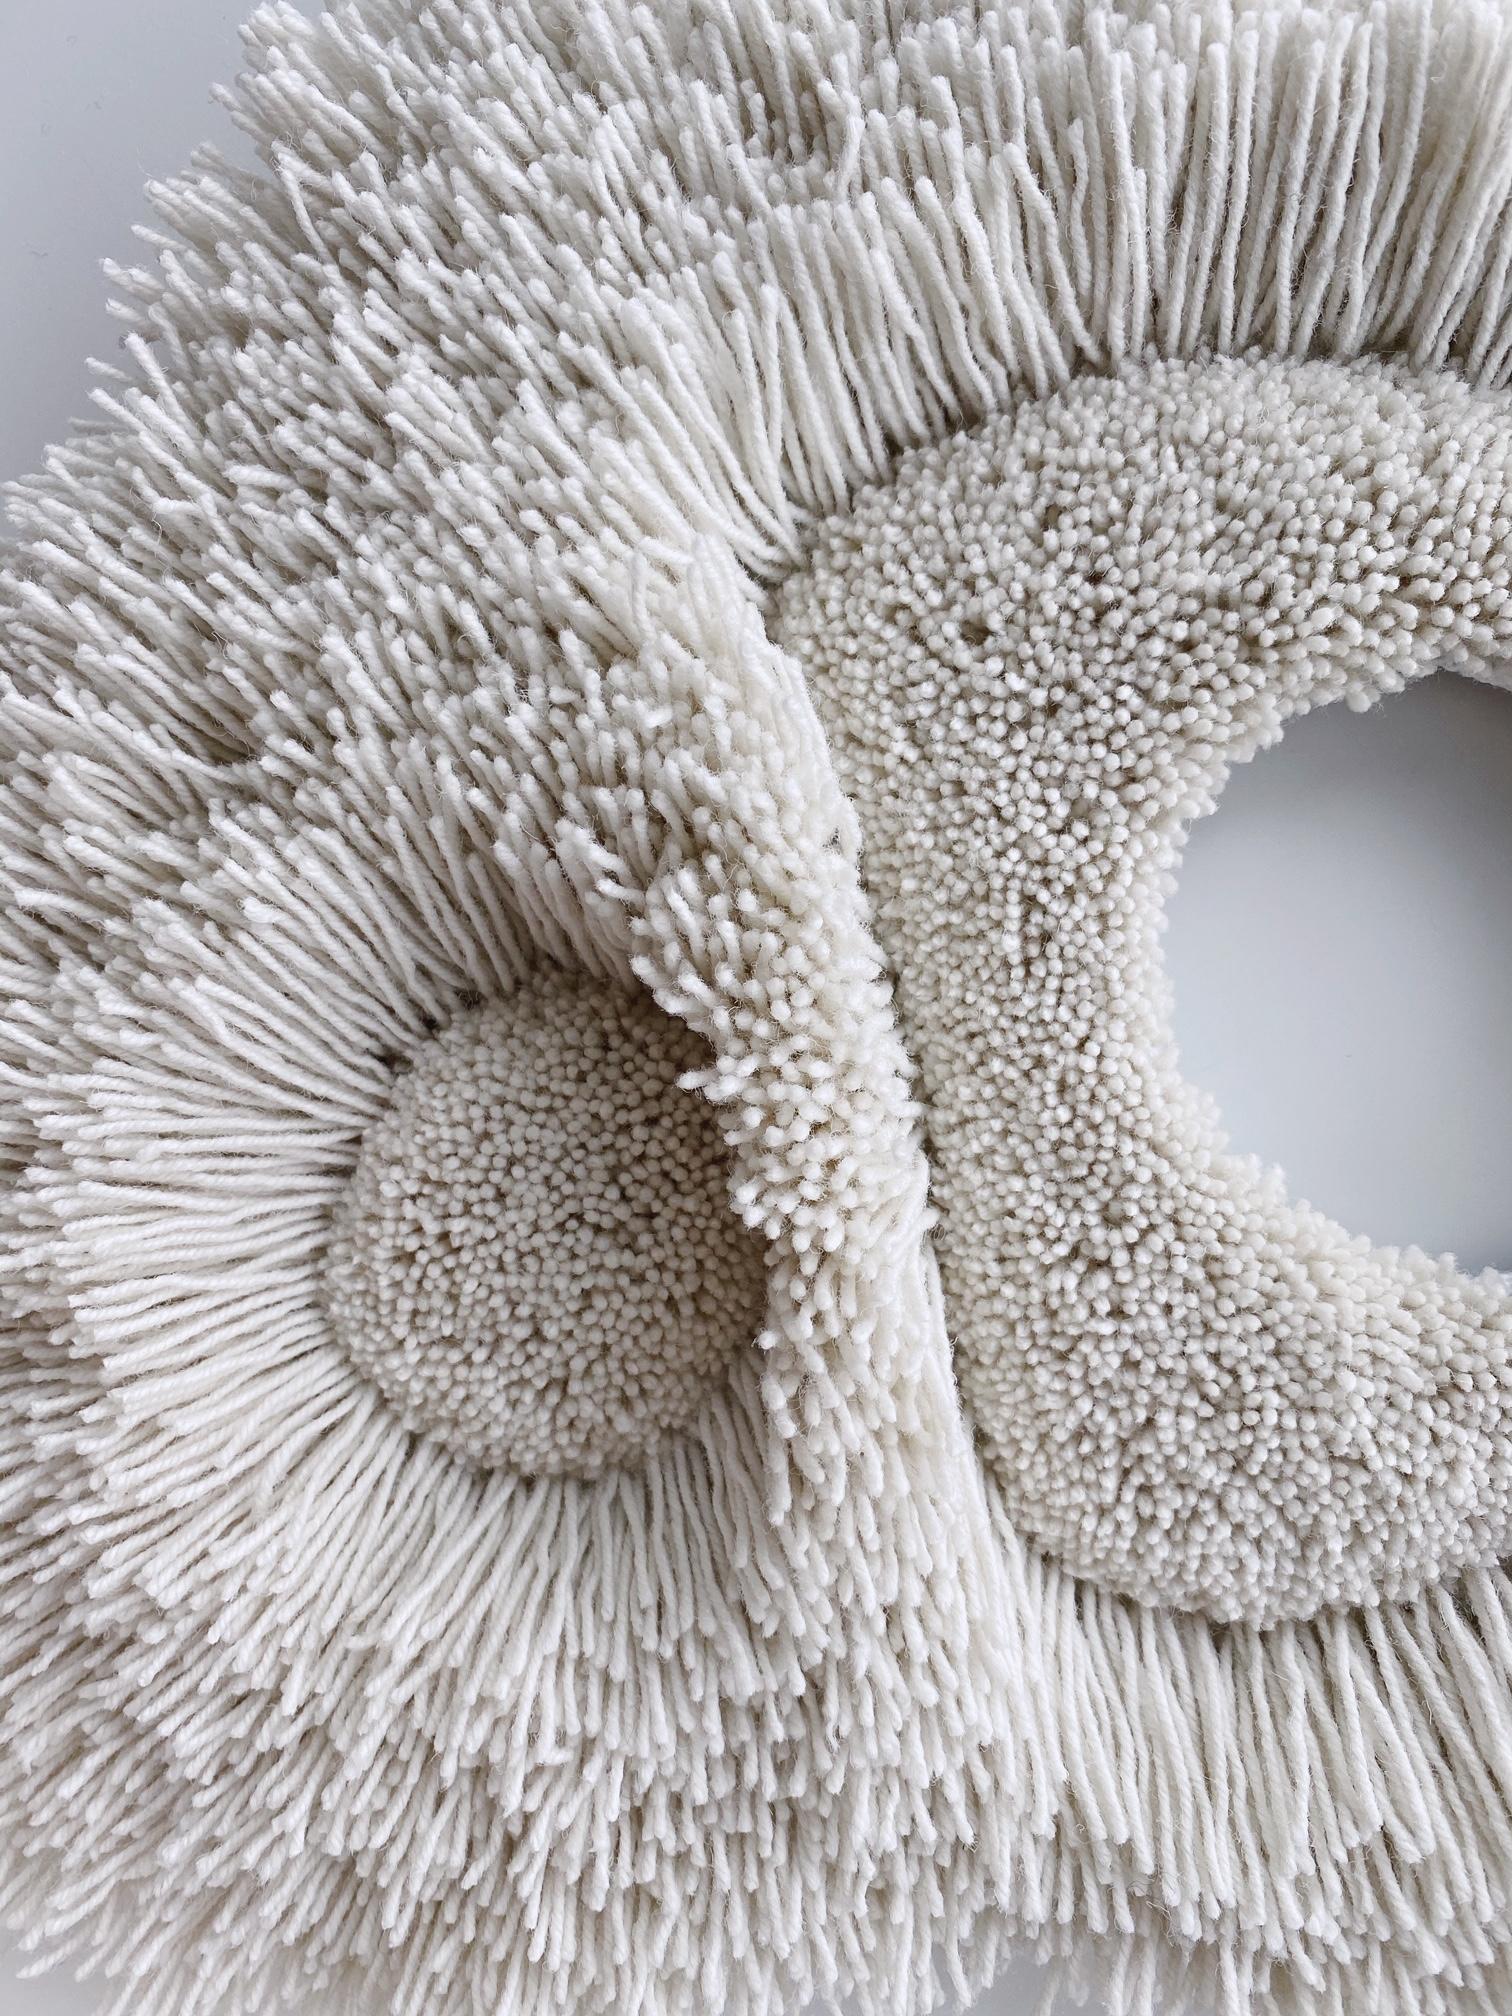 Petit objet touffeté en laine naturelle blanc cassé.   
Fabriqué à la main à Copenhague par la créatrice à partir de 100 % de laine. 
La forme organique et la douceur de la laine ajoutent de la texture et de la douceur à un espace.  

Peut être fixé